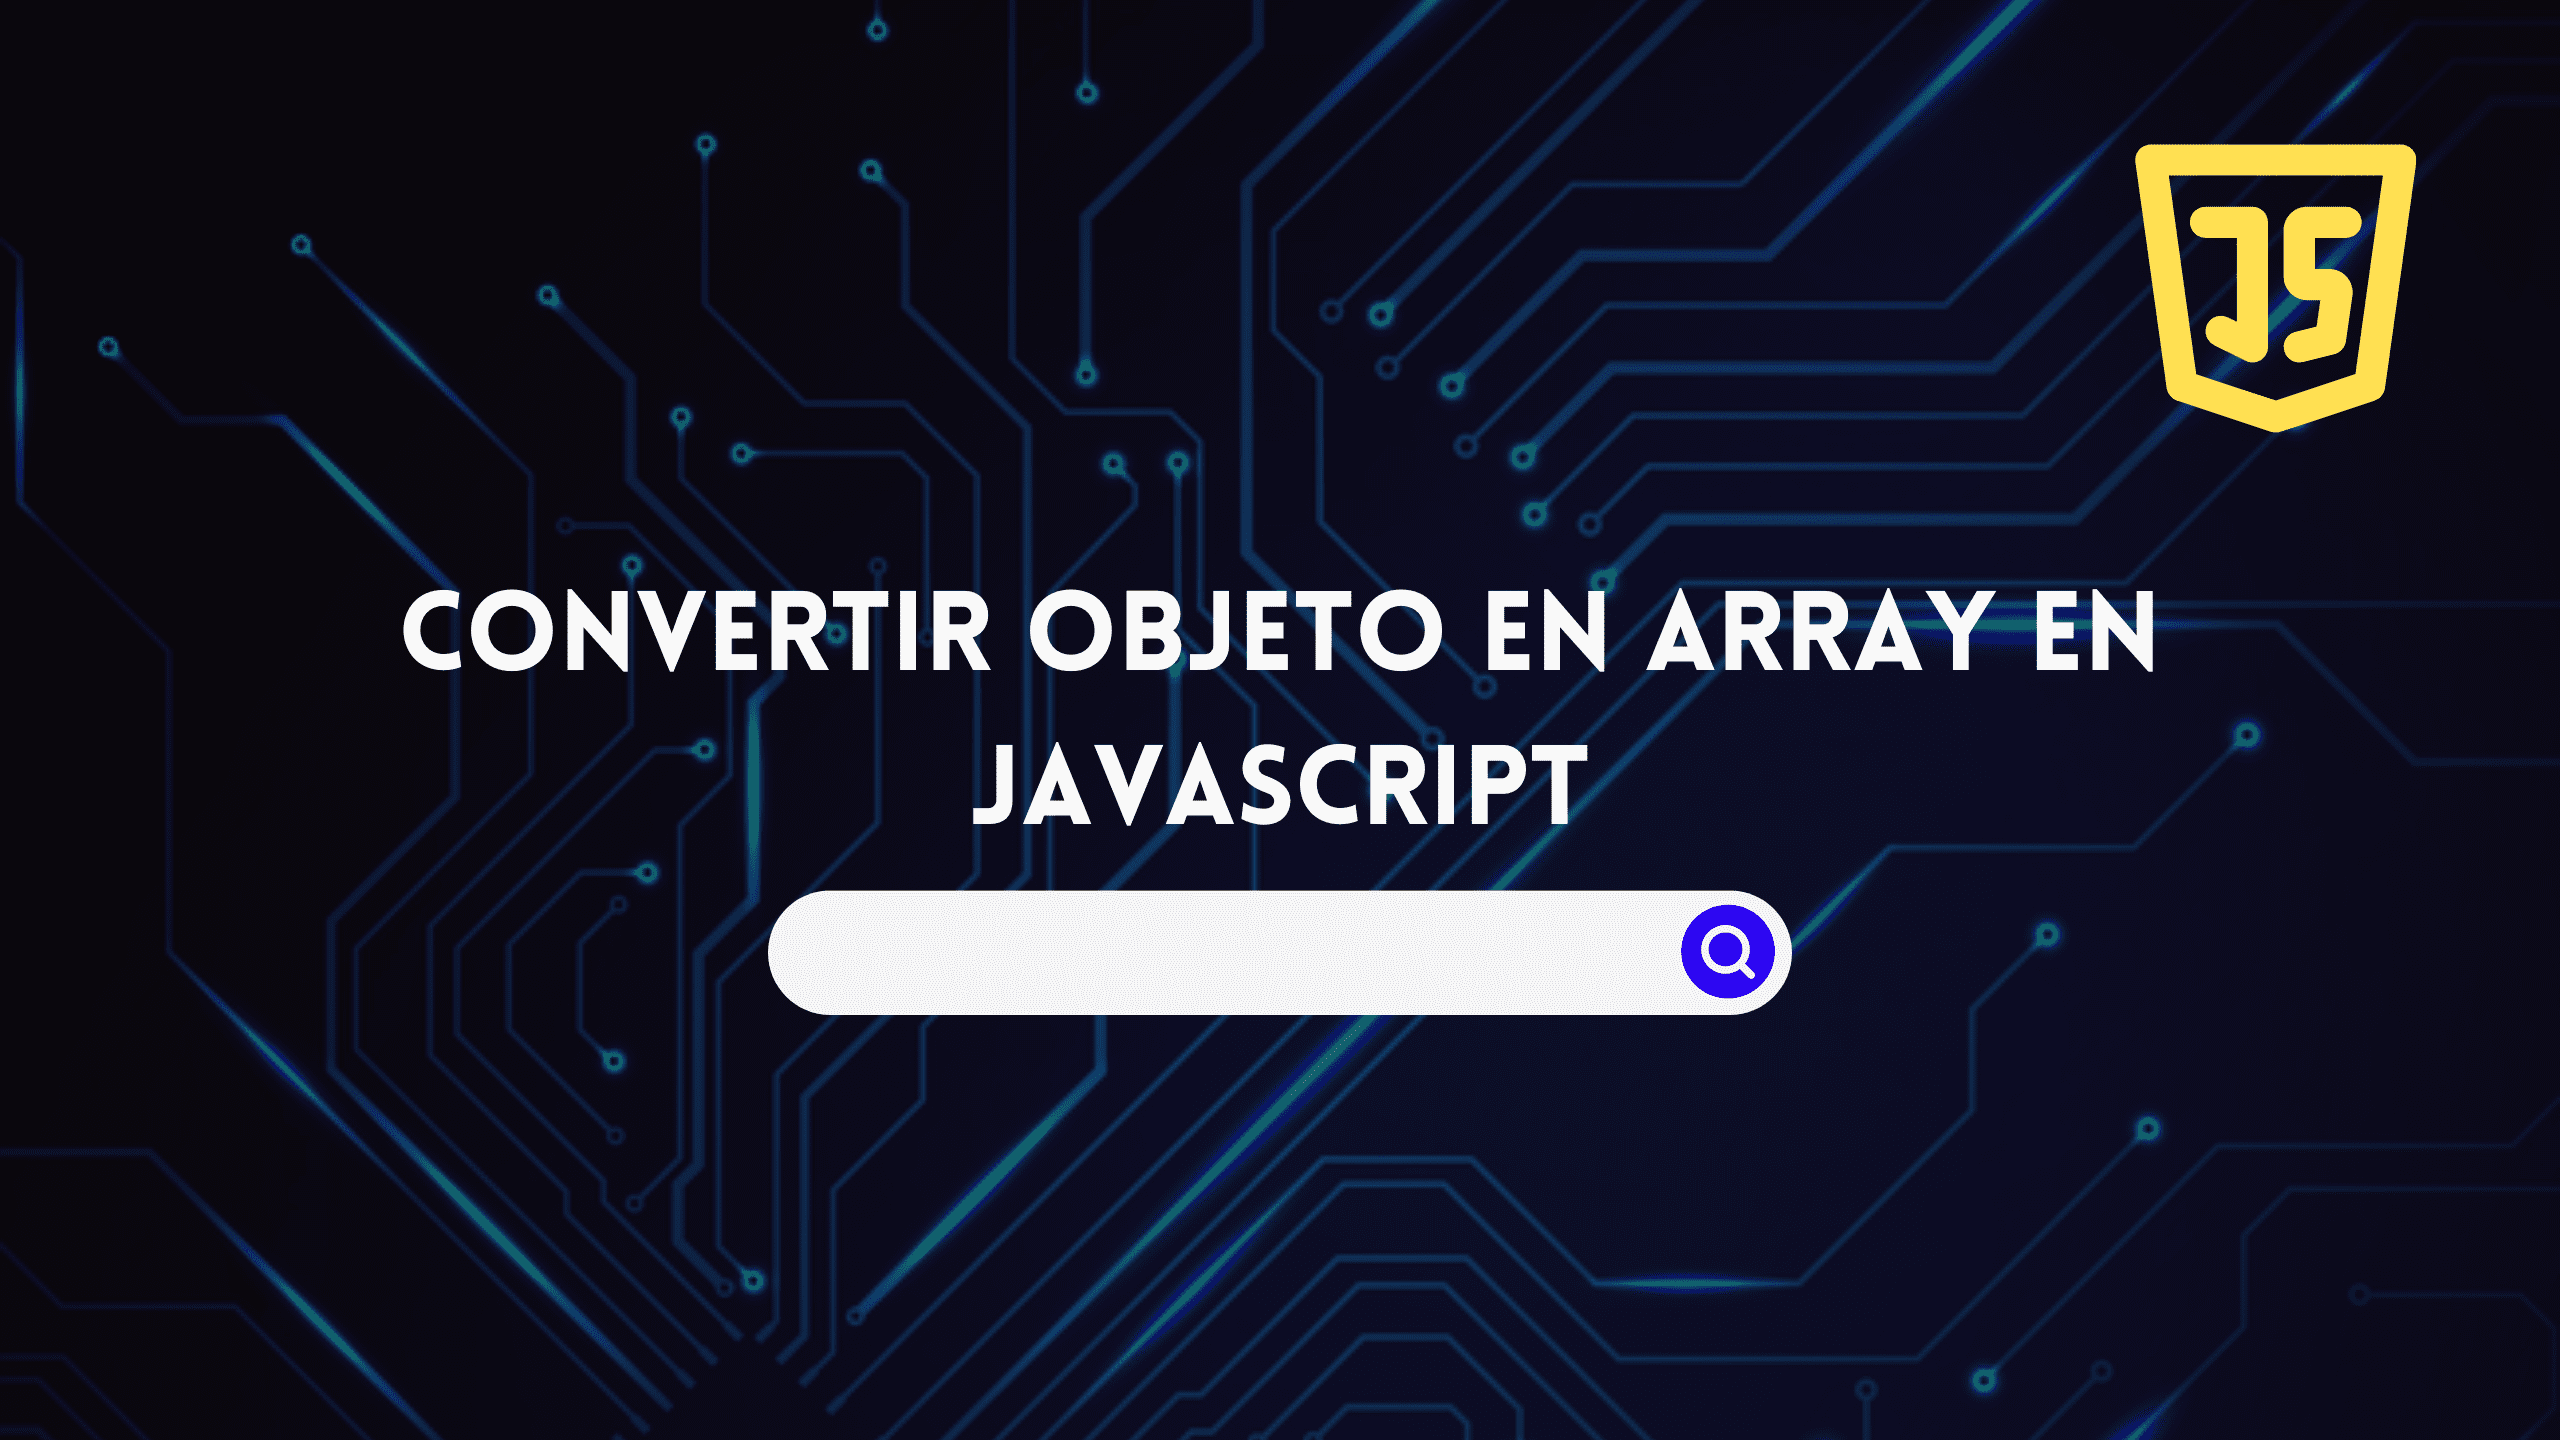 Convertir objeto en array en Javascript